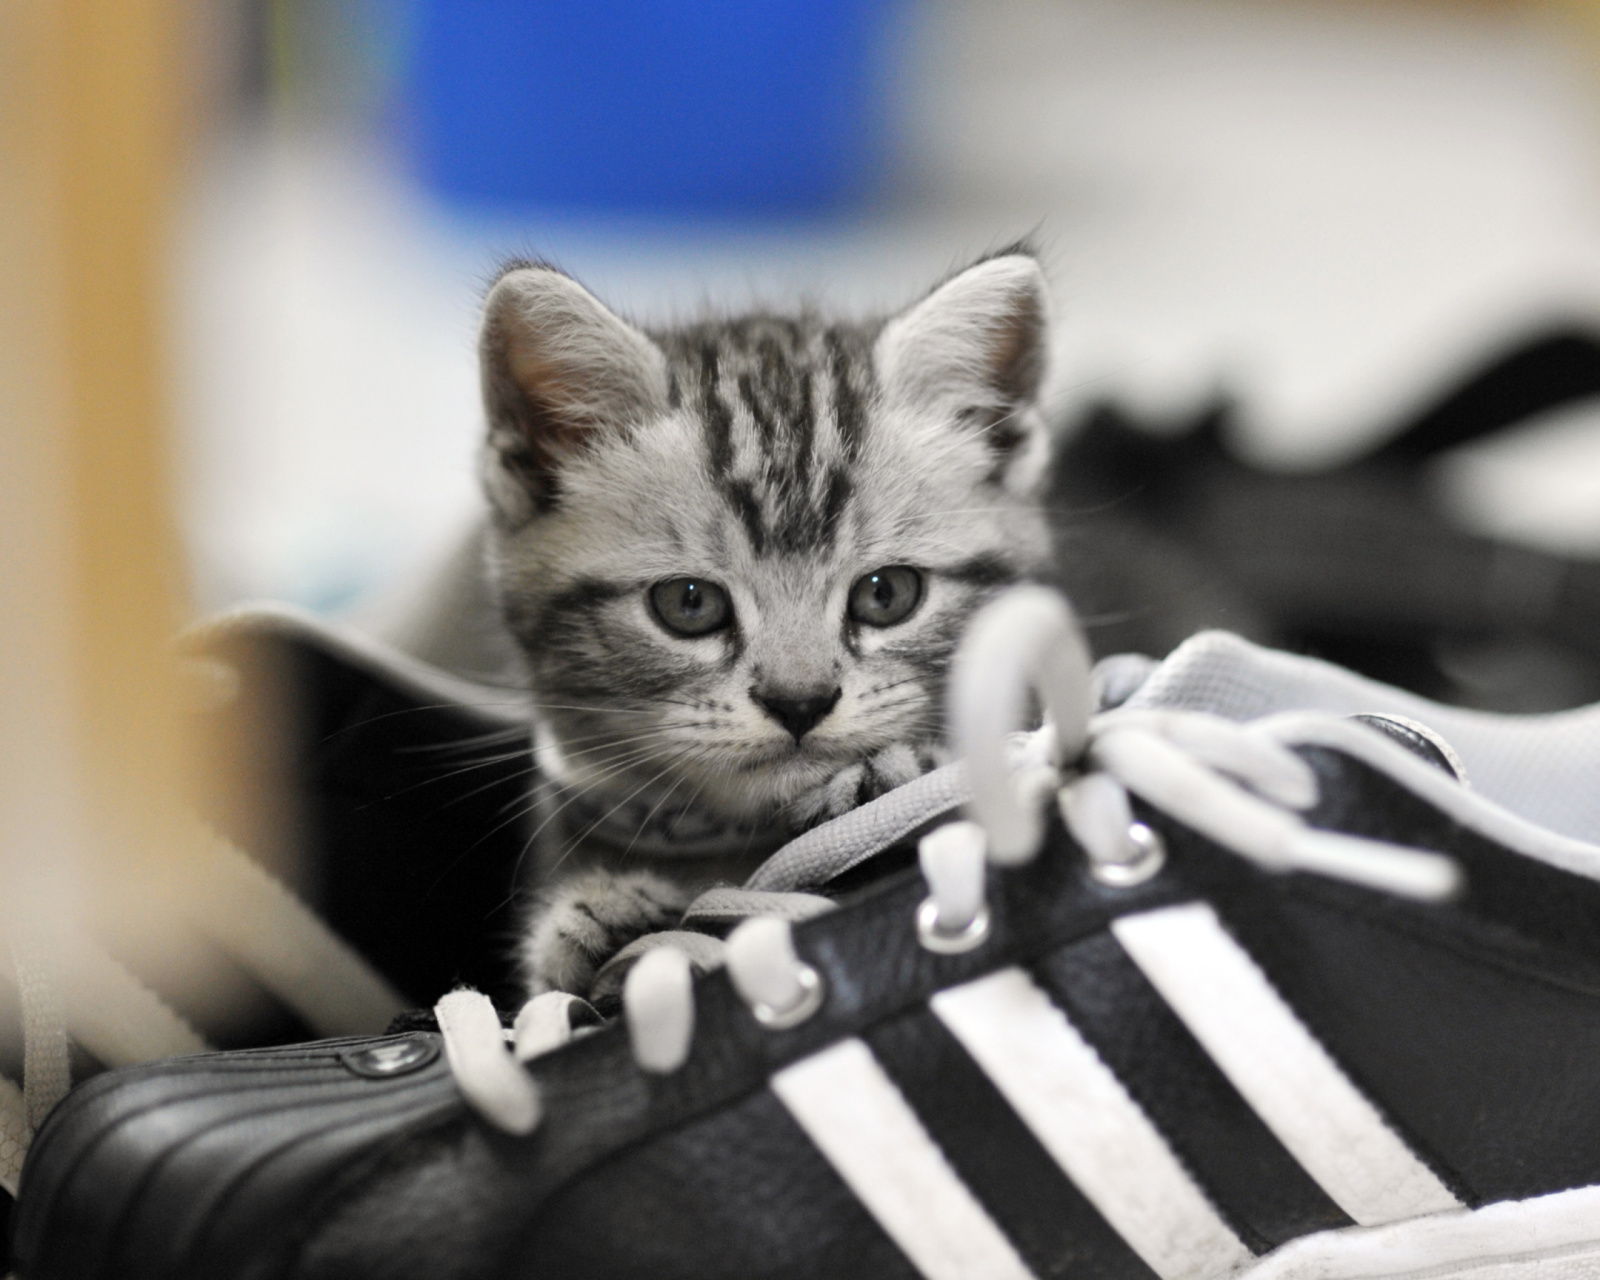 Kitten with shoes screenshot #1 1600x1280